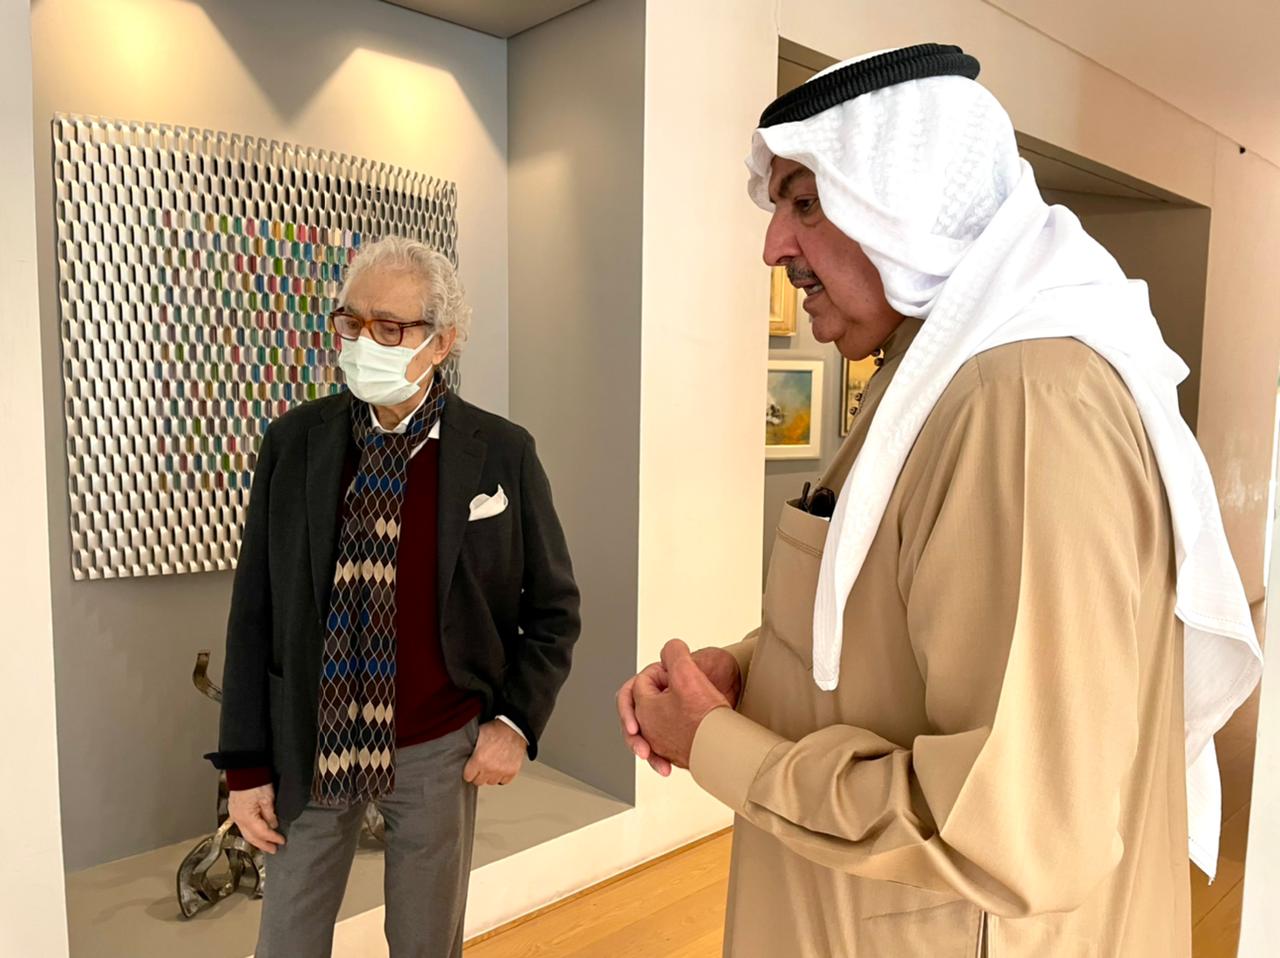 زيارة فاروق حسنى لمؤسسة الشيخ راشد آل خليفة للفنون بمملكة البحرين (9)